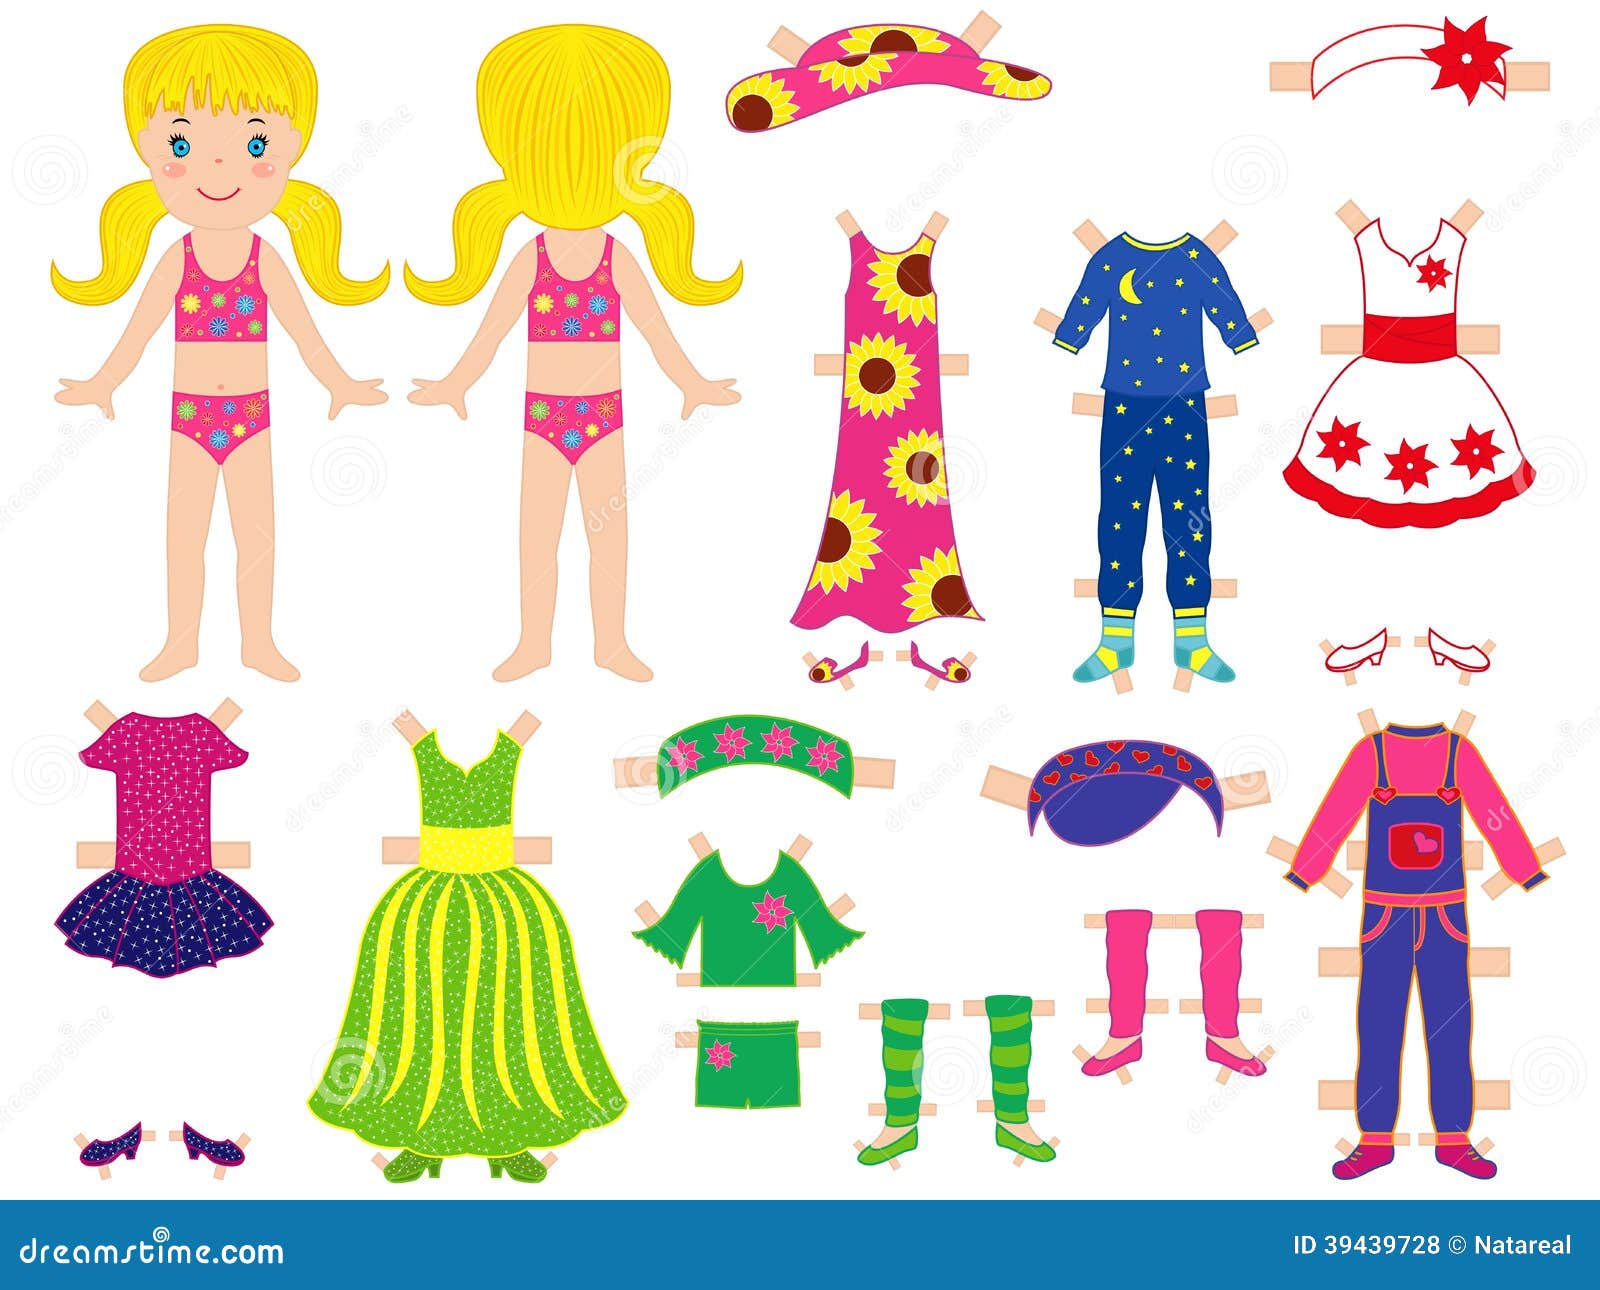 Наряды для бумажных кукол. Бумажные куклы с одеждой. Бумажная девочка с одеждой. Цветные куклы с одеждой. Куклы без платья